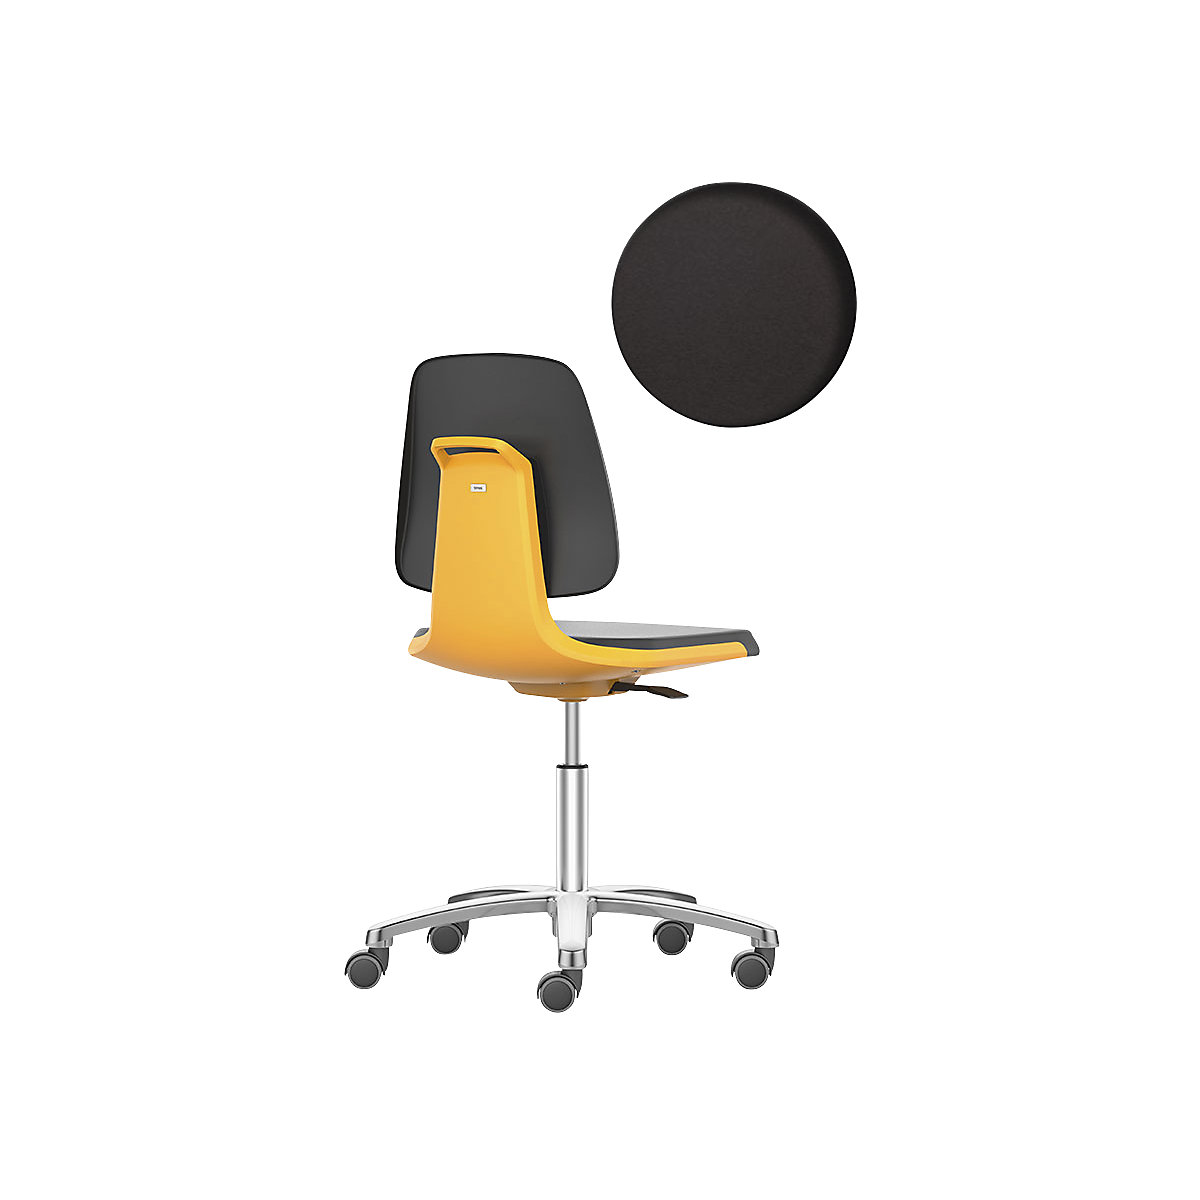 LABSIT industrial swivel chair – bimos, five-star base with castors, PU foam seat, orange-16